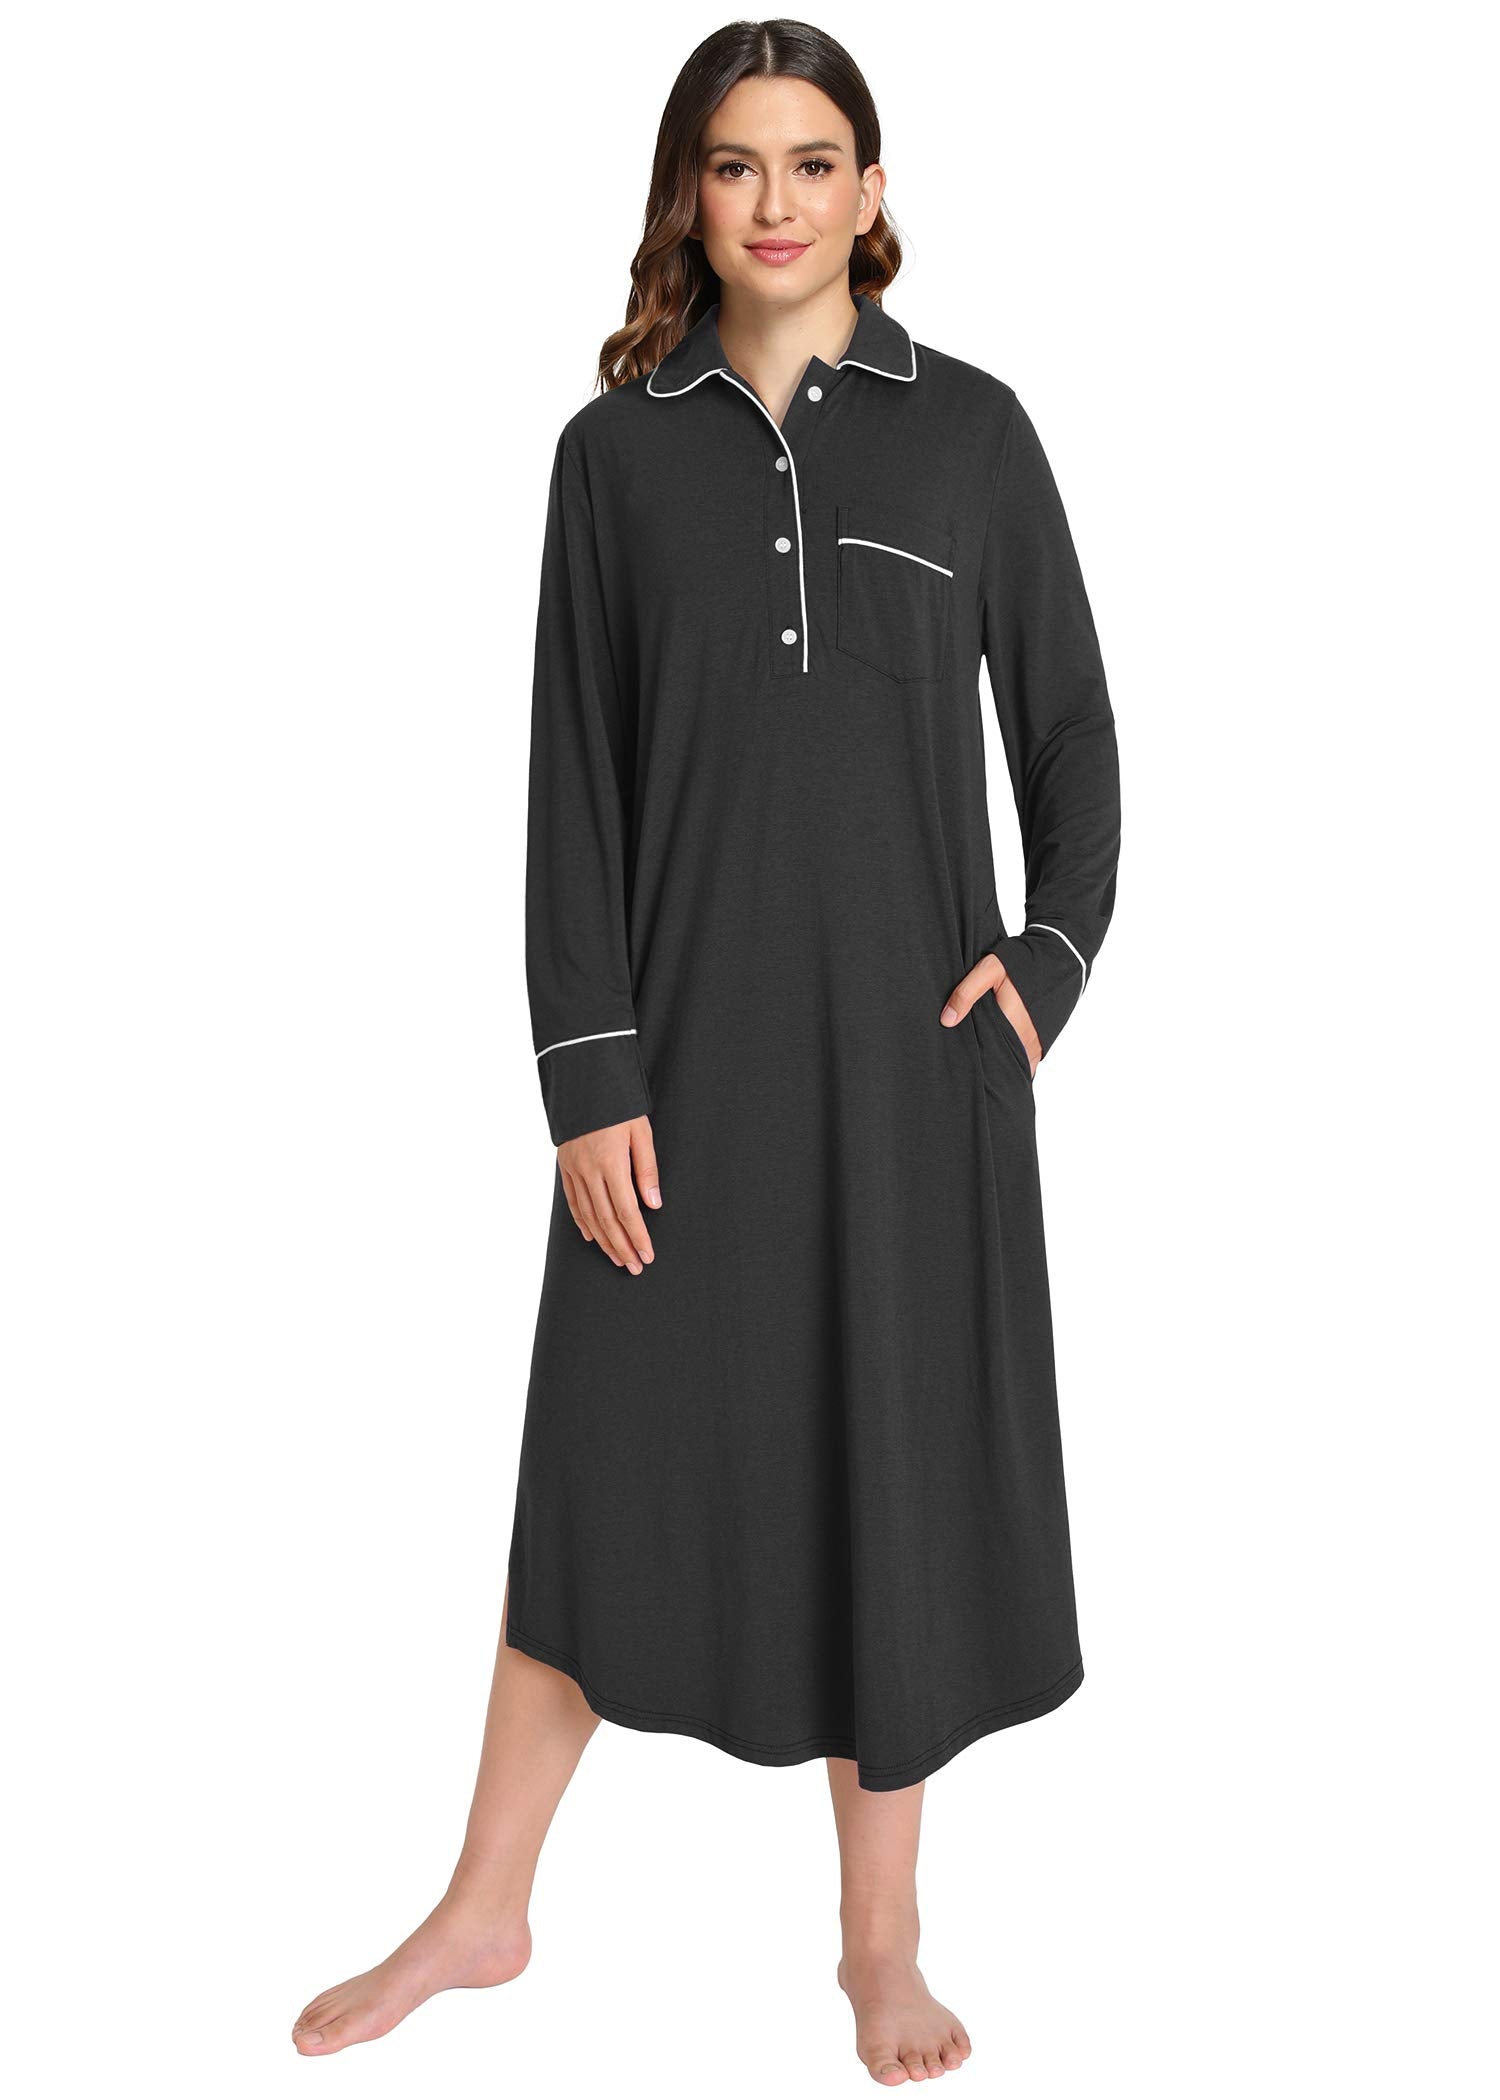 Women's Button Down Sleep Shirt Long Sleeves Nightgown – Latuza